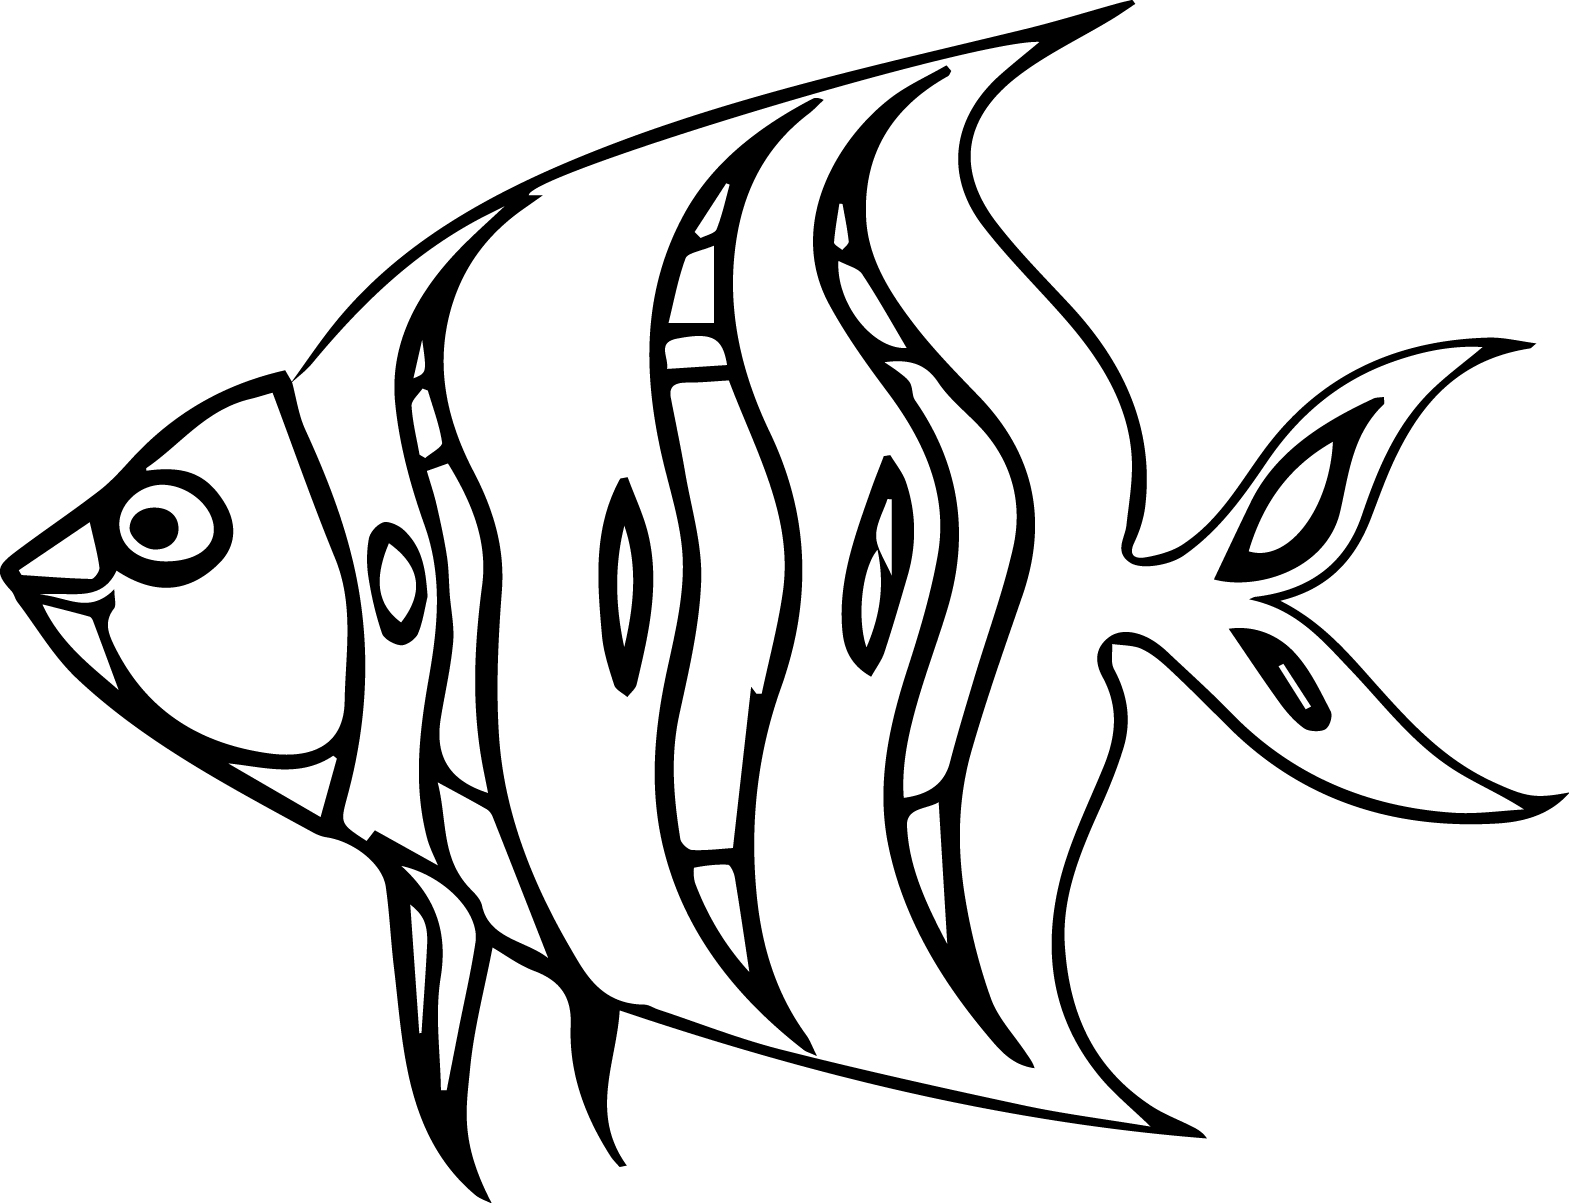 Рыбы распечатать раскраска: Раскраски Рыбы - распечатать в формате А4